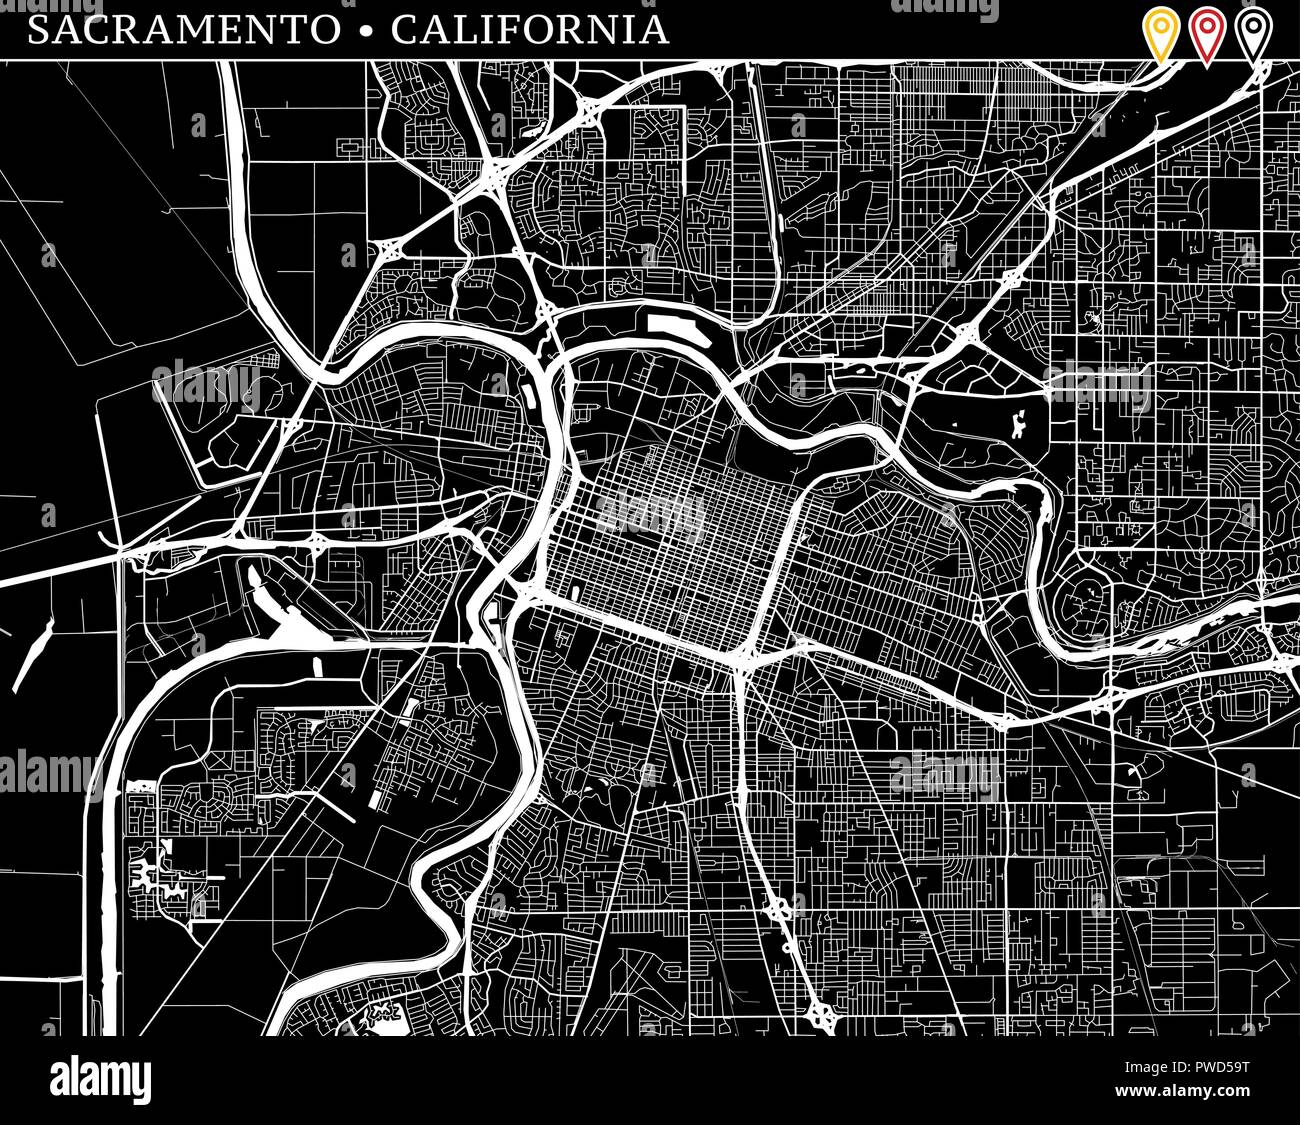 Carte simple de Sacramento, Californie, USA. Version noir et blanc pour l'assainissement de l'horizons et impressions. Cette carte de Sacramento contient trois marqueurs qui Illustration de Vecteur